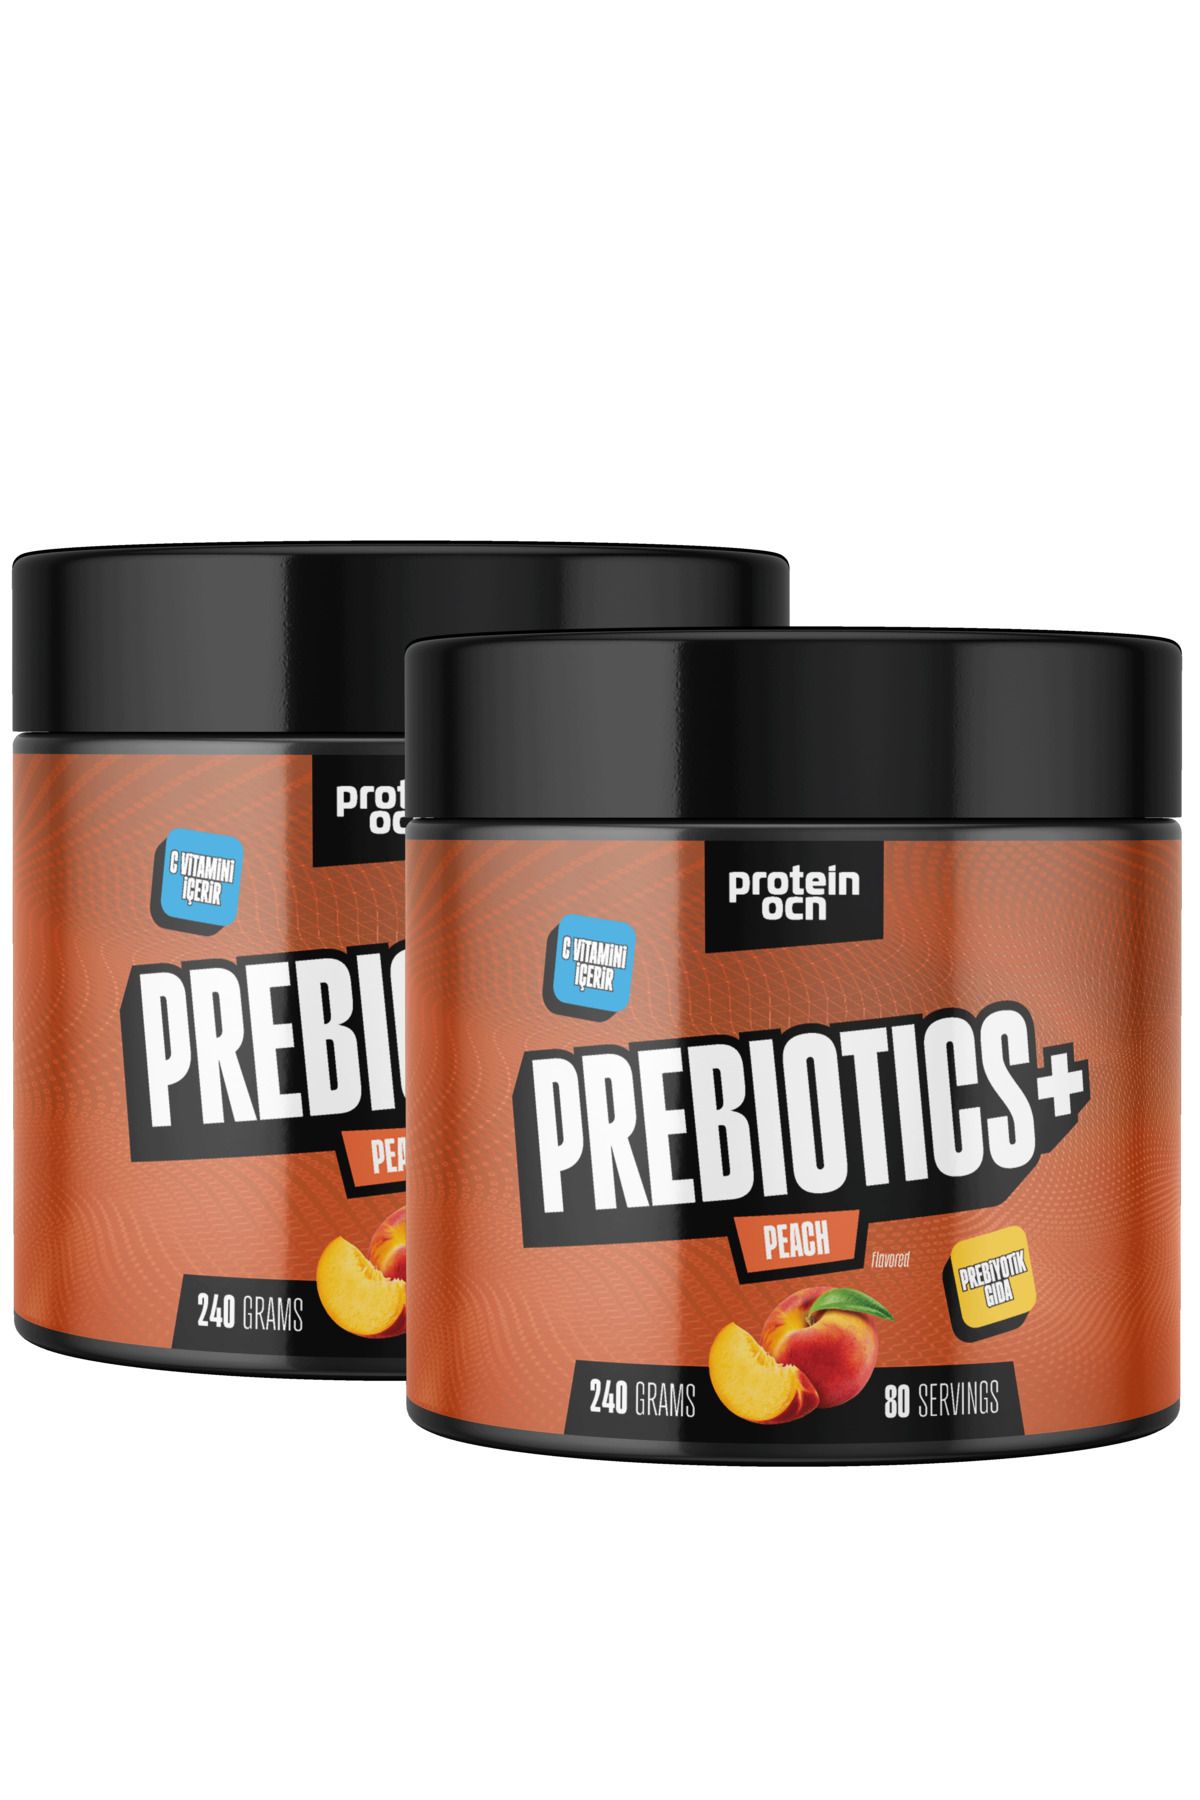 Proteinocean Prebiotics+ Şeftali 240g X 2 Adet - 160 Servis